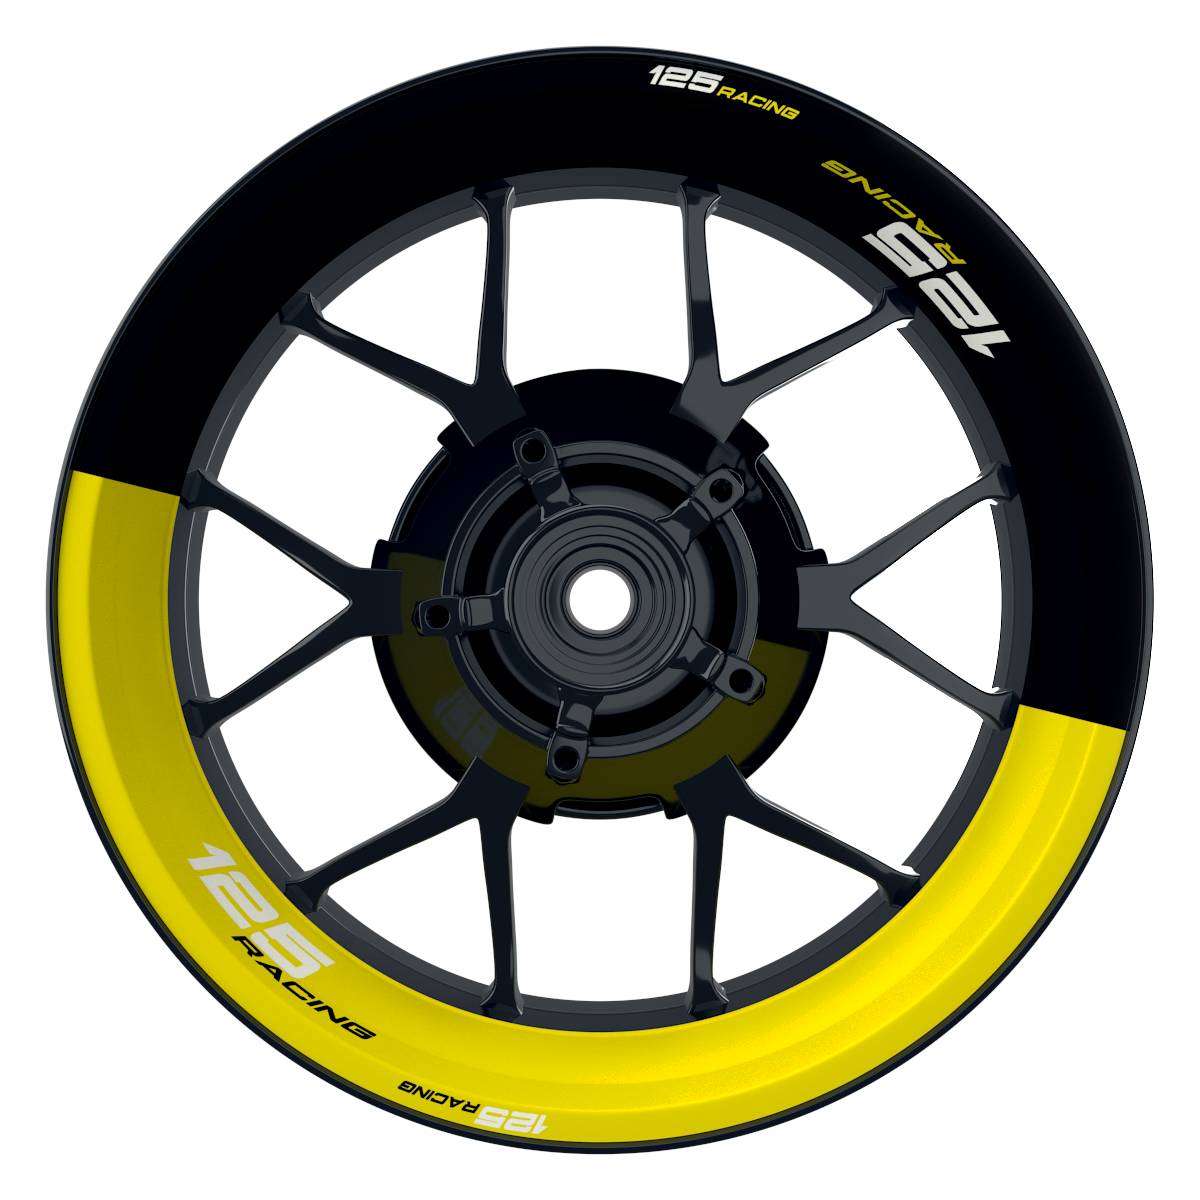 KTM 125RACING Halb halb schwarz gelb Wheelsticker Felgenaufkleber